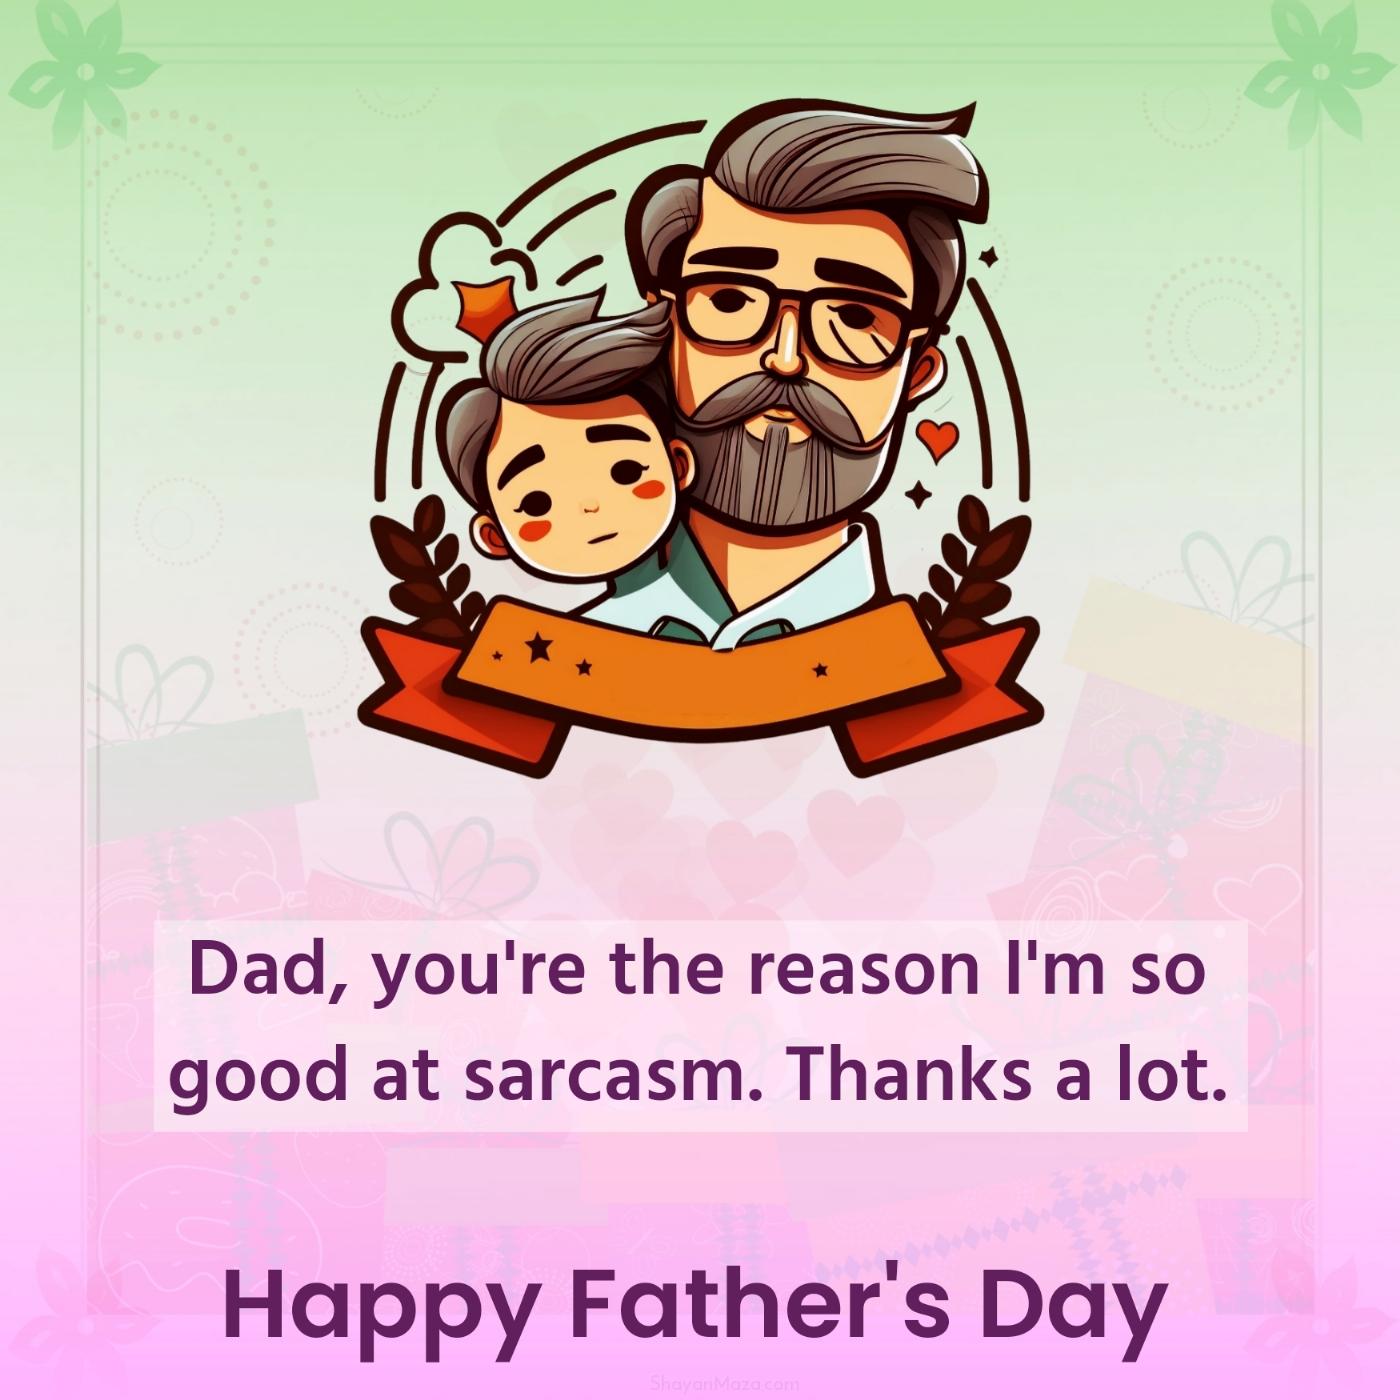 Dad you're the reason I'm so good at sarcasm